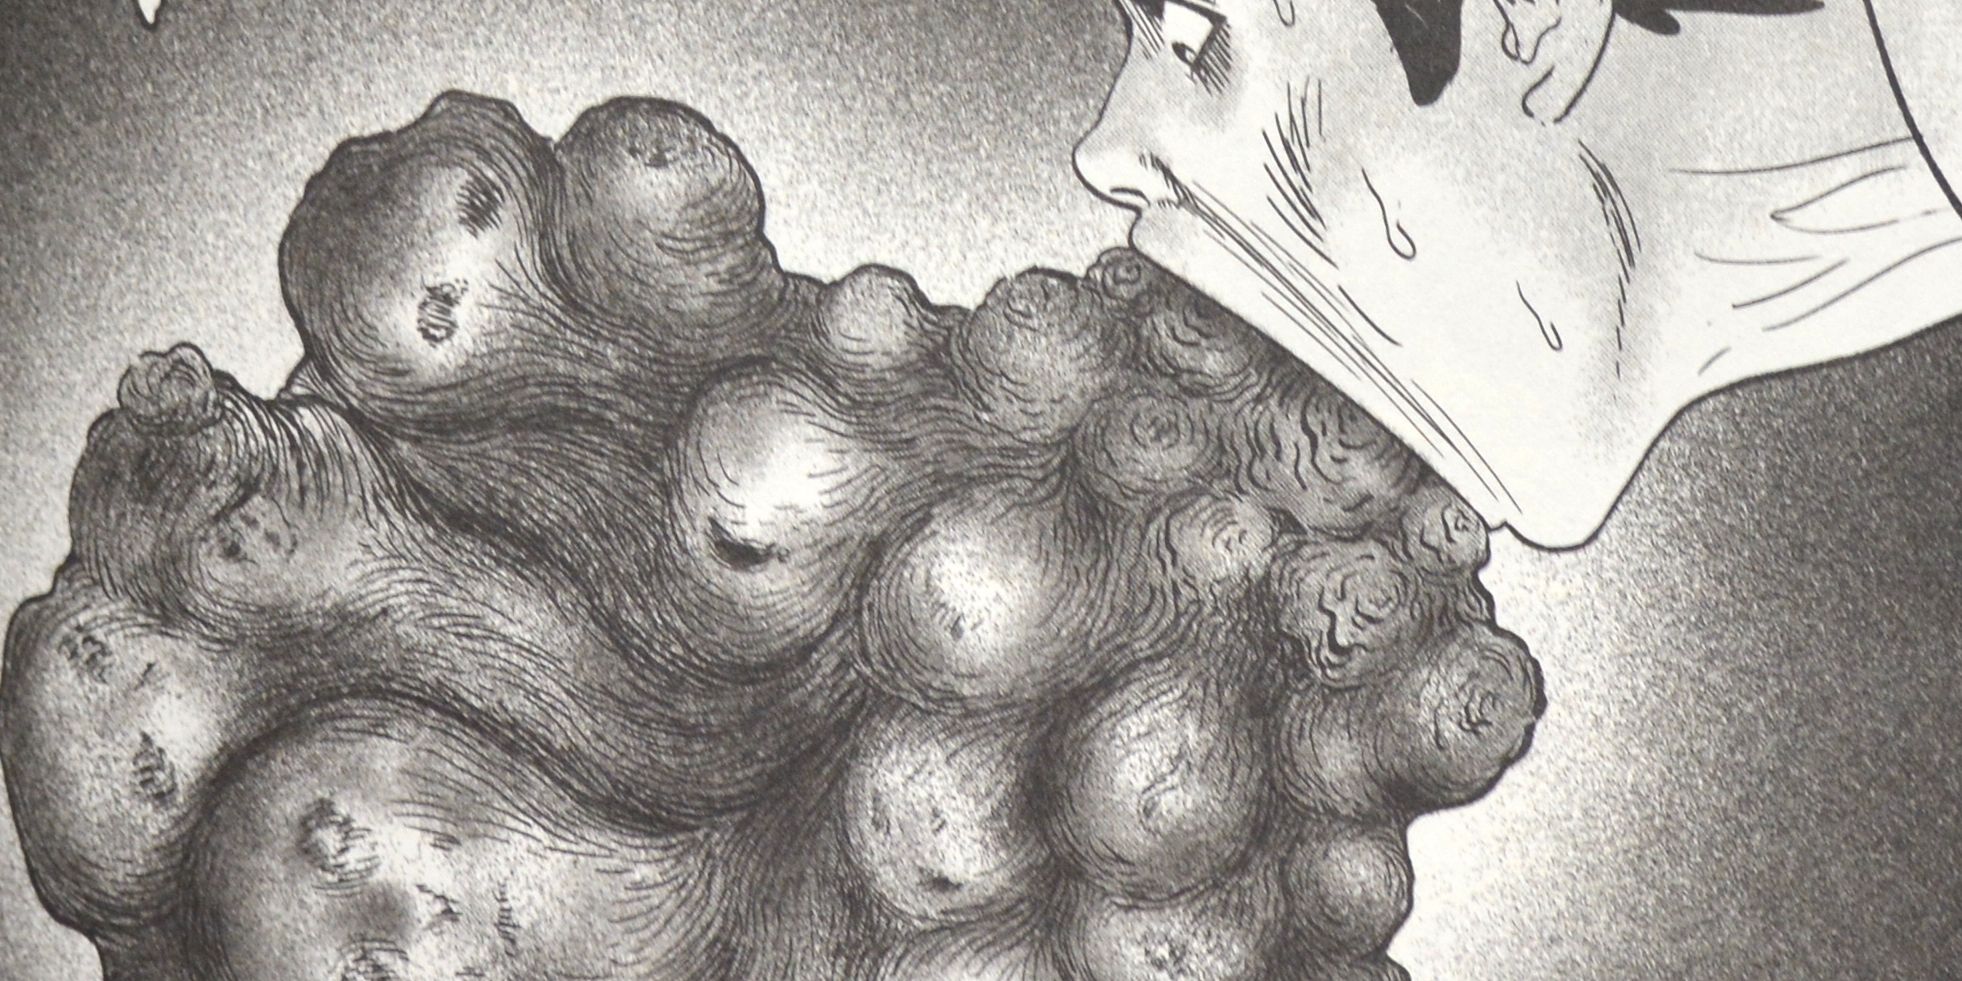 Manga Junji Ito No Longr Human Face Egg Clutch